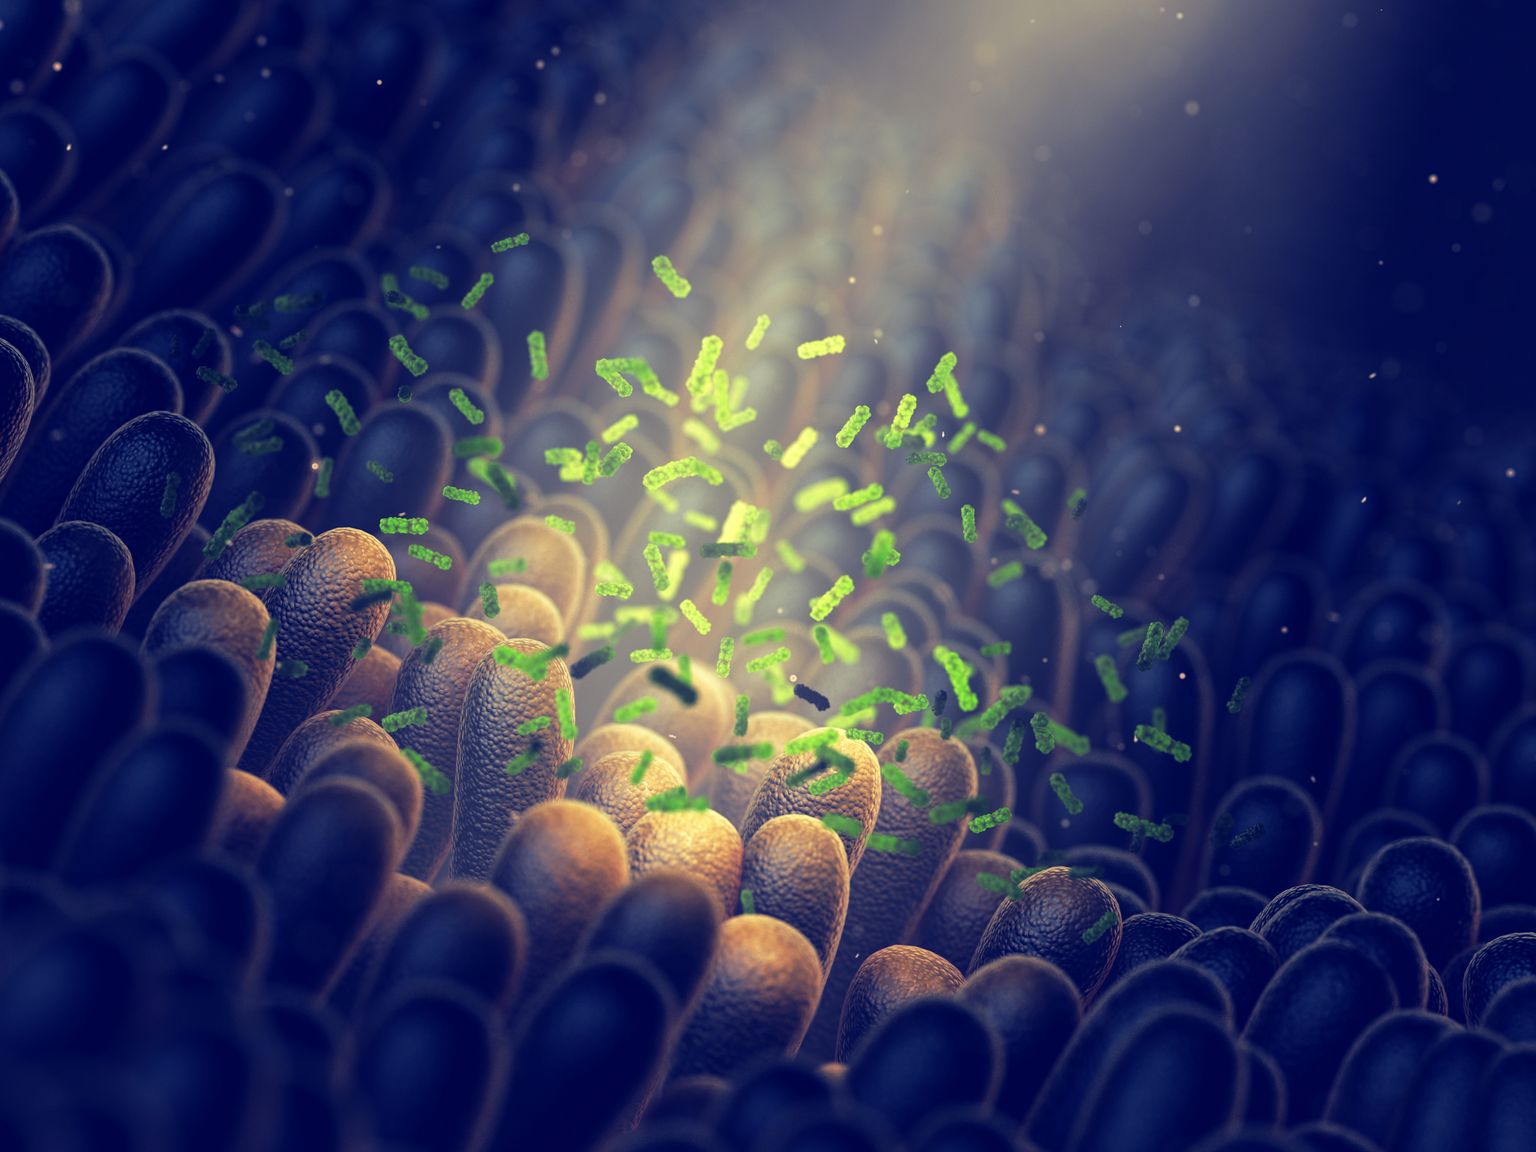 bacterias intestinales, salud de la flora intestinal, imágenes 3D